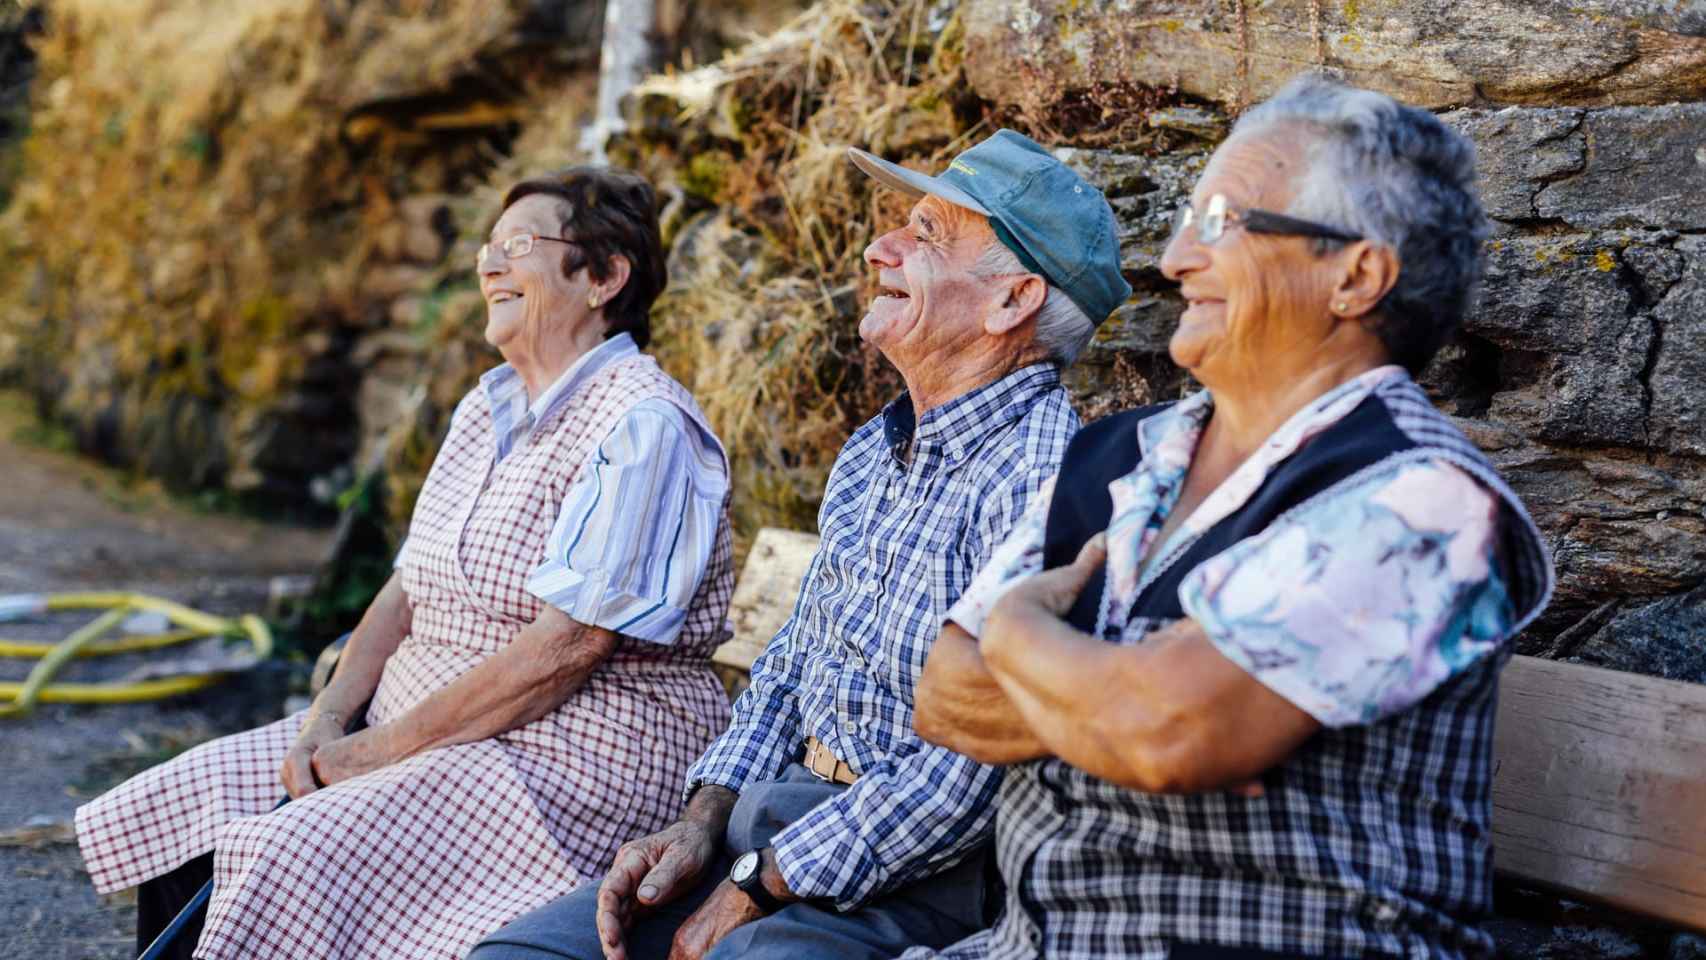 Tres paisanos gallegos descansando y conversando en un banco.